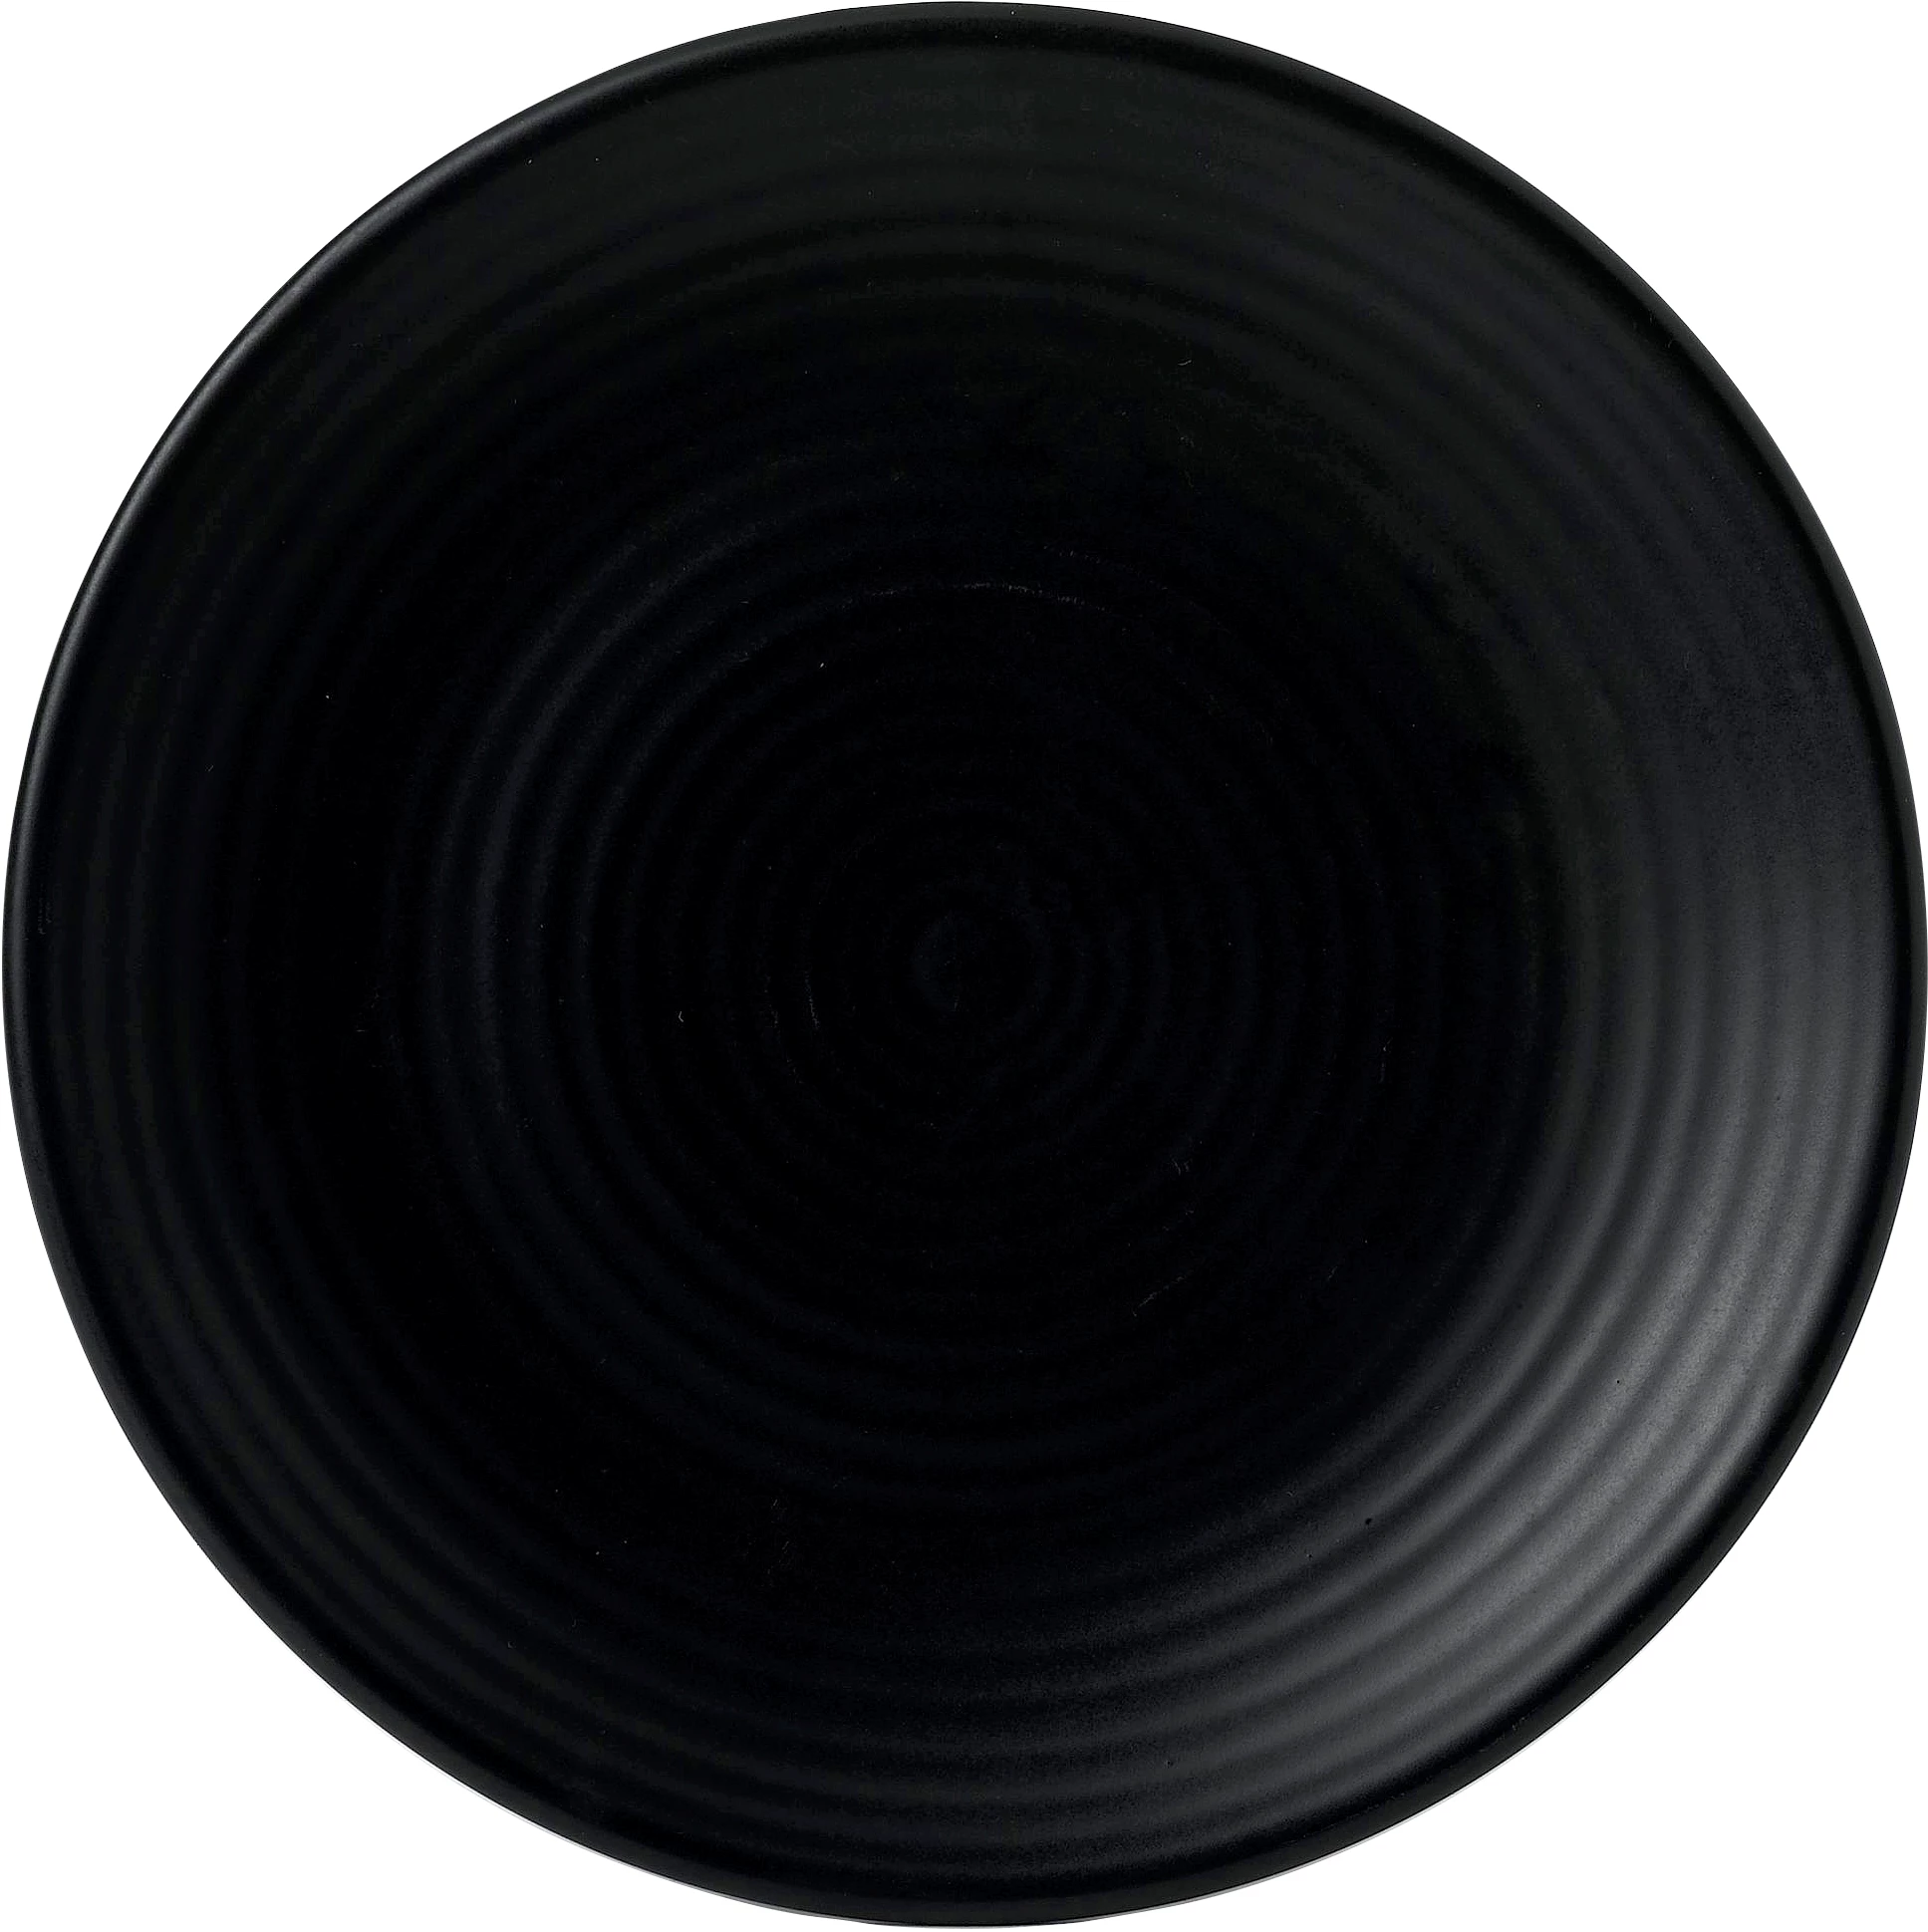 Dudson Evo Jet flad tallerken, sort, ø22,9 cm